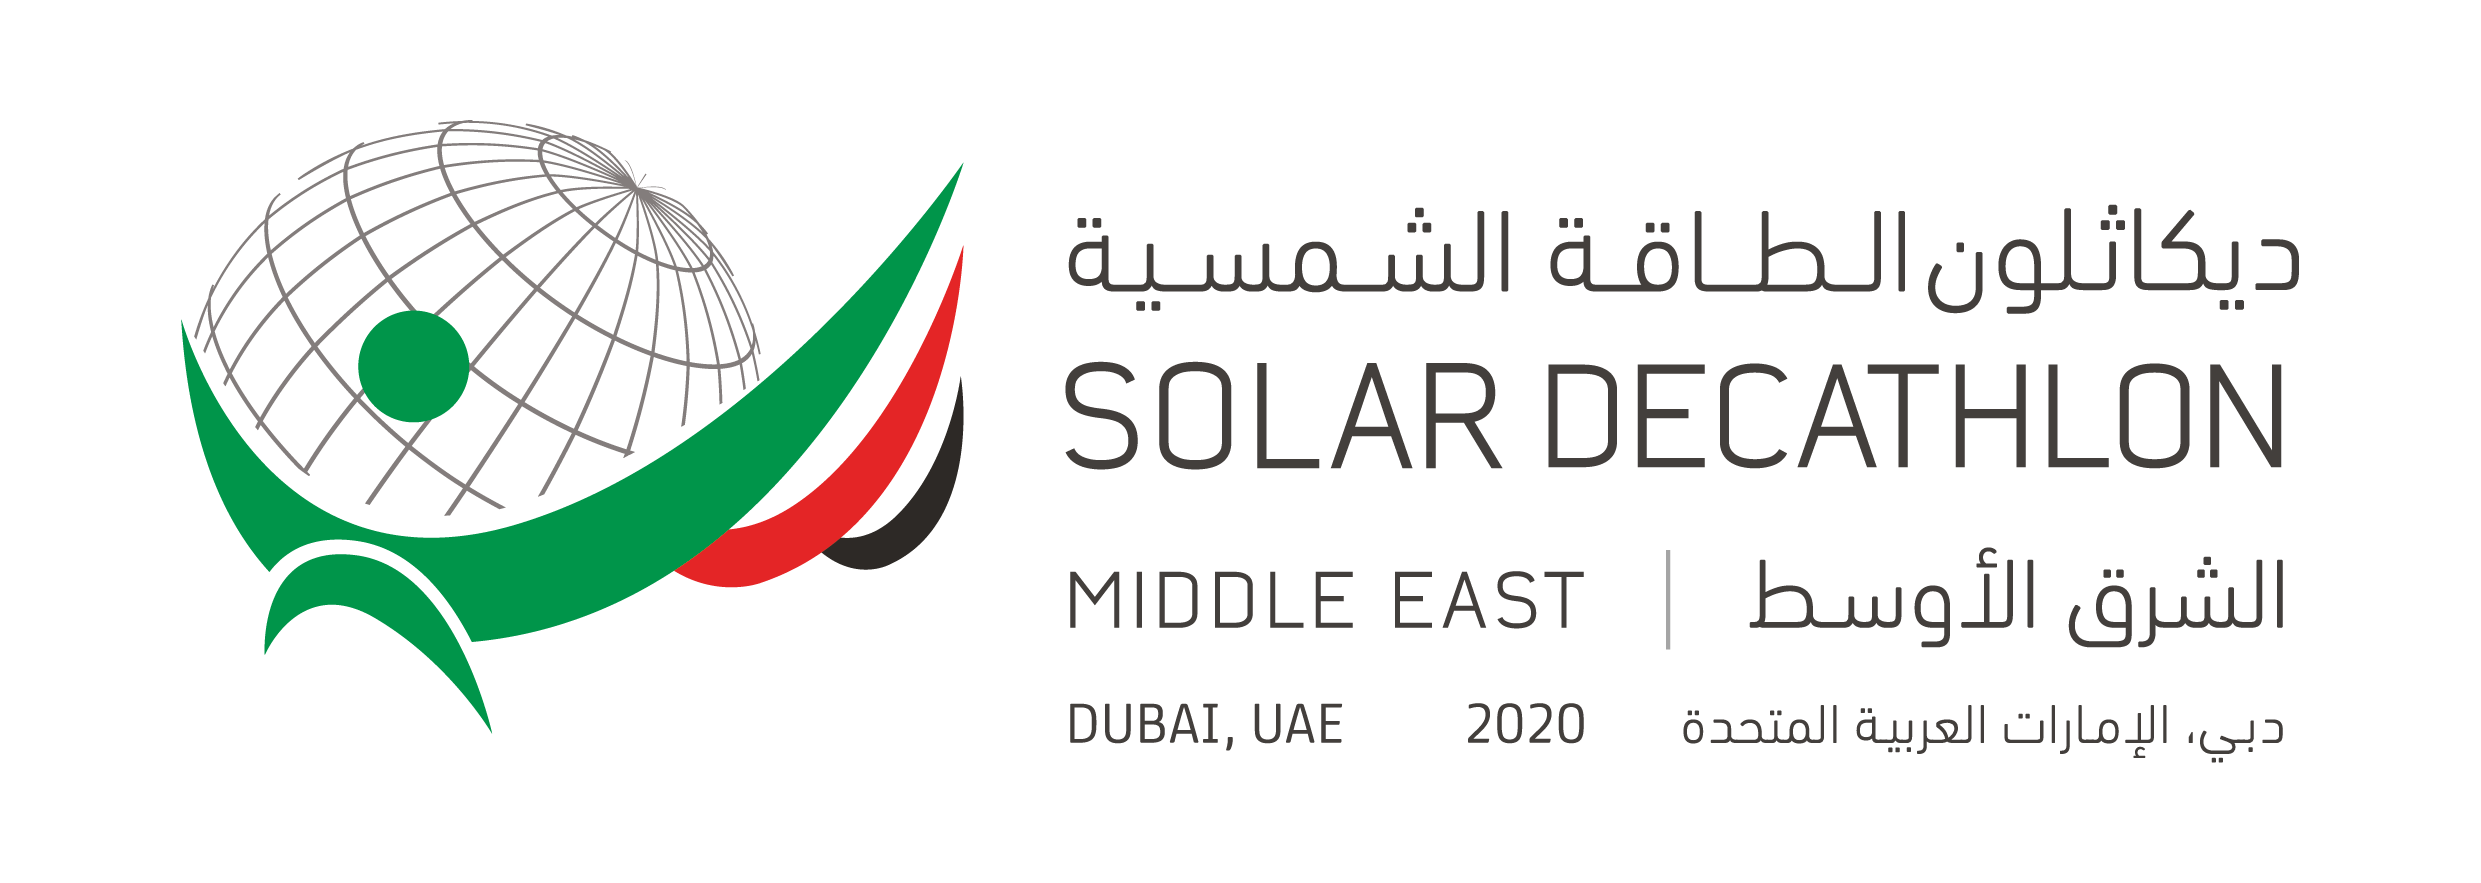 solar decathlon 2018